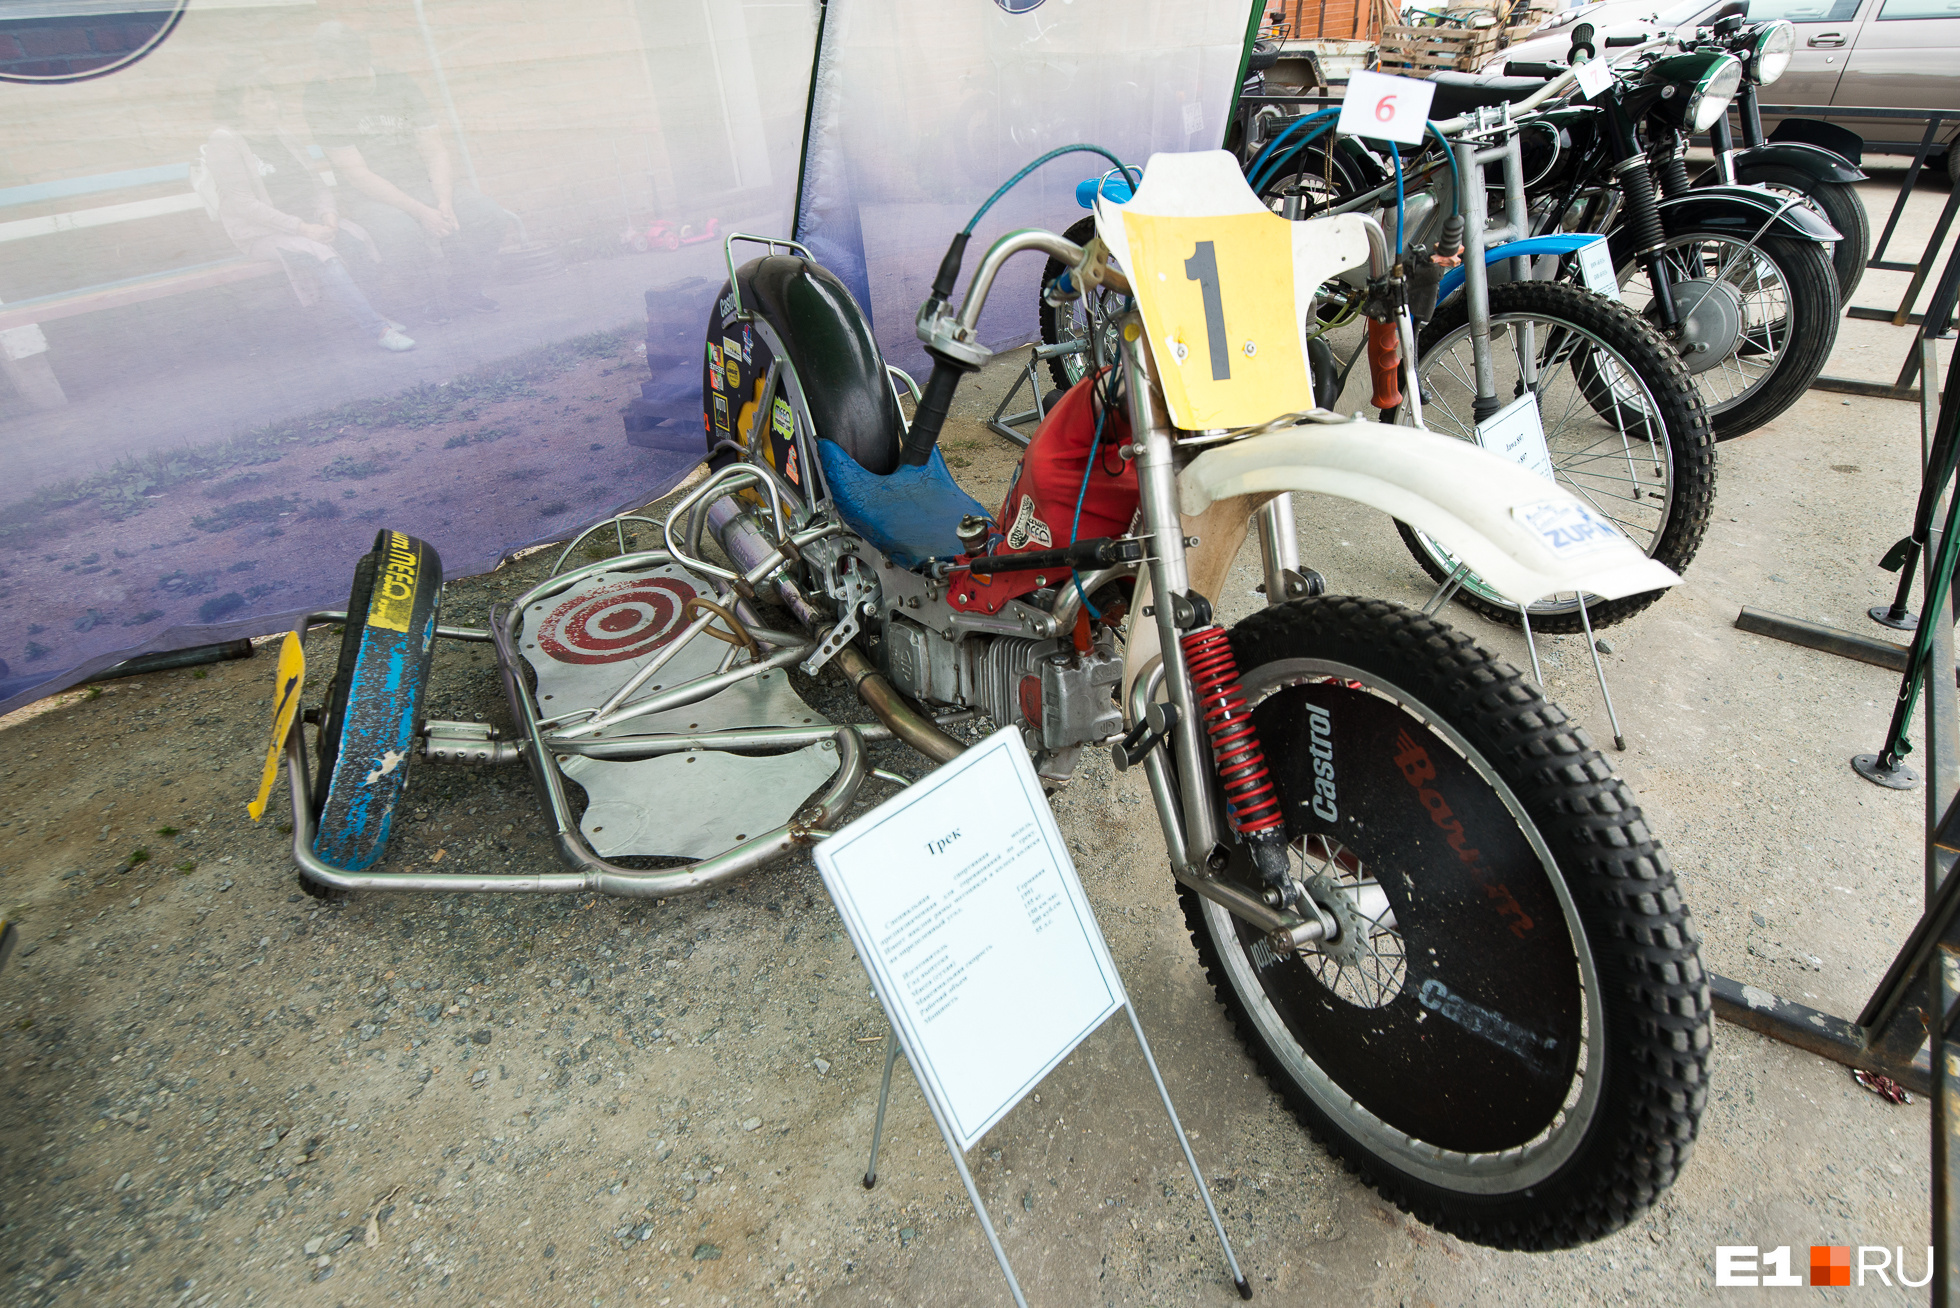 «Трек» — специальная модель для соревнований по треку, имеющая наклон рамы и колес коляски